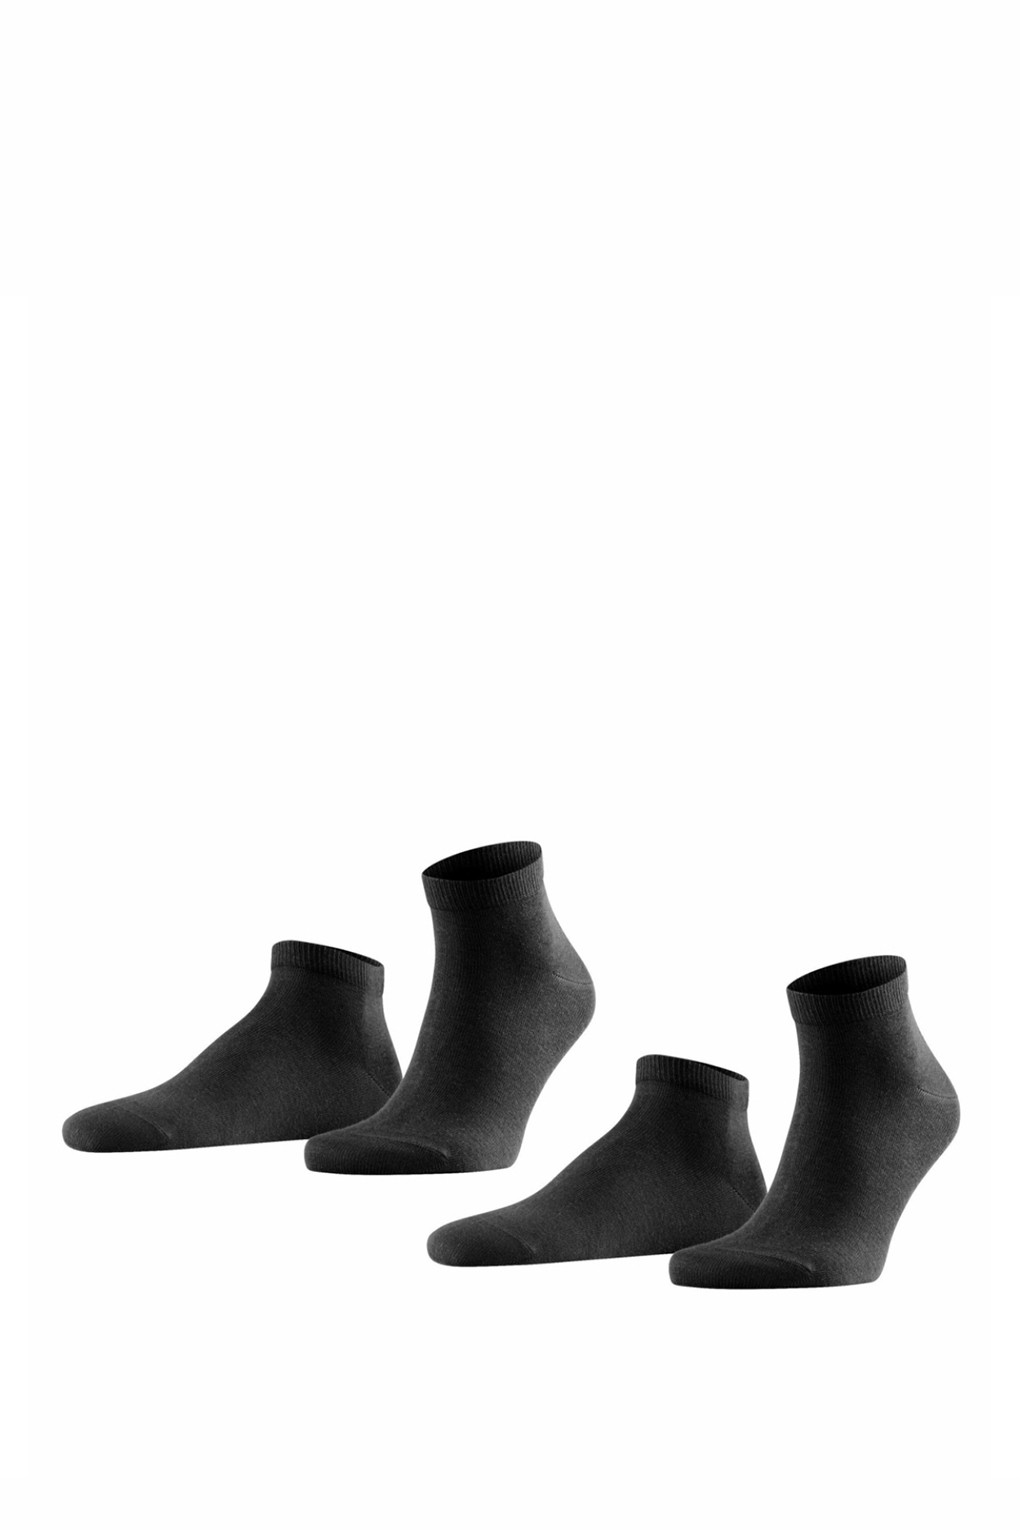 Комплект носков мужских FALKE 14606 черных 39-42